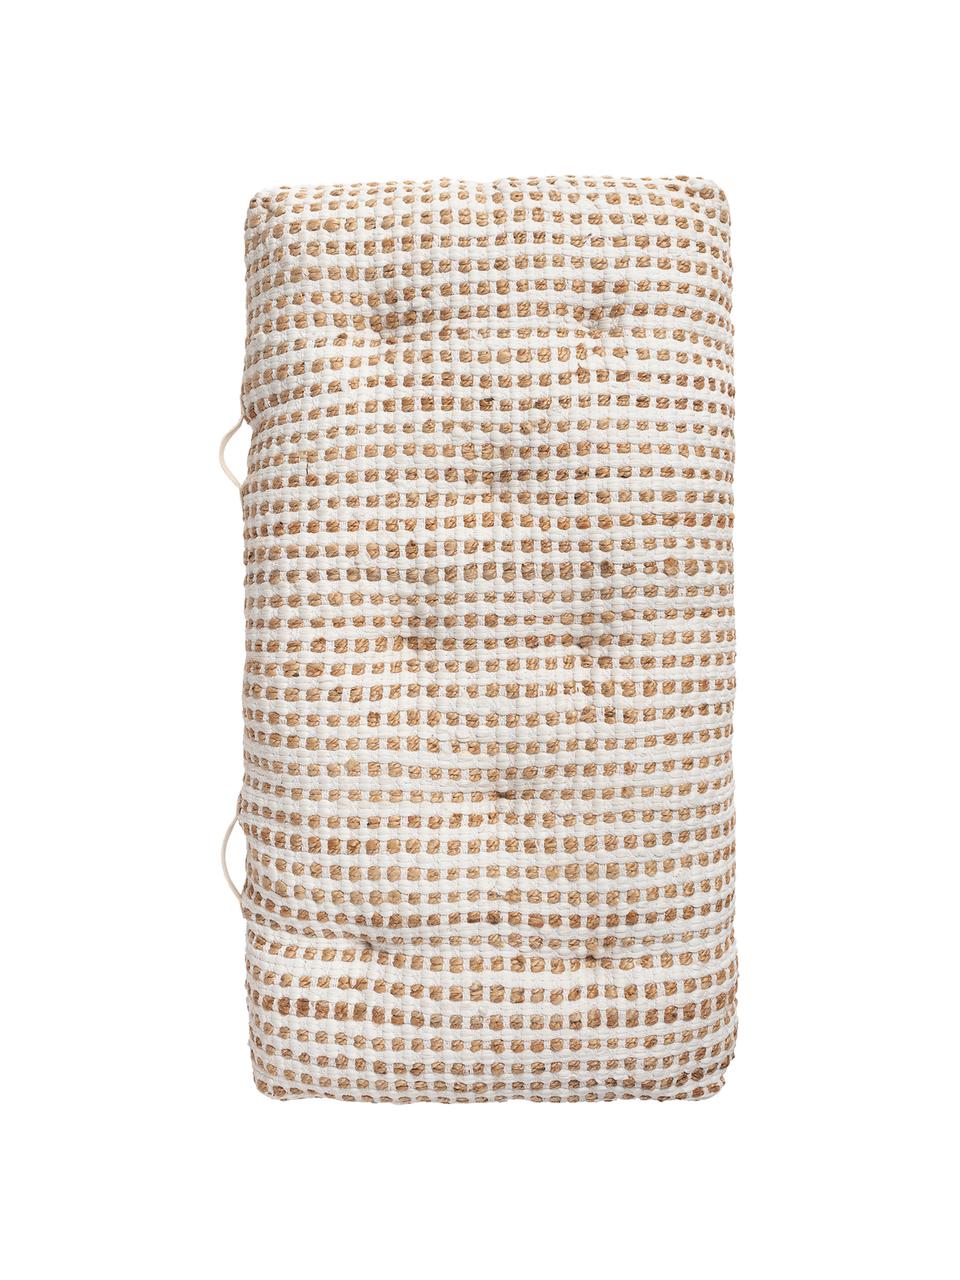 Poduszka podłogowa z bawełny/juty w stylu boho Fiesta, Tapicerka: 55% bawełna chindi, 45% j, Biały, beżowy, S 120 x W 13 cm